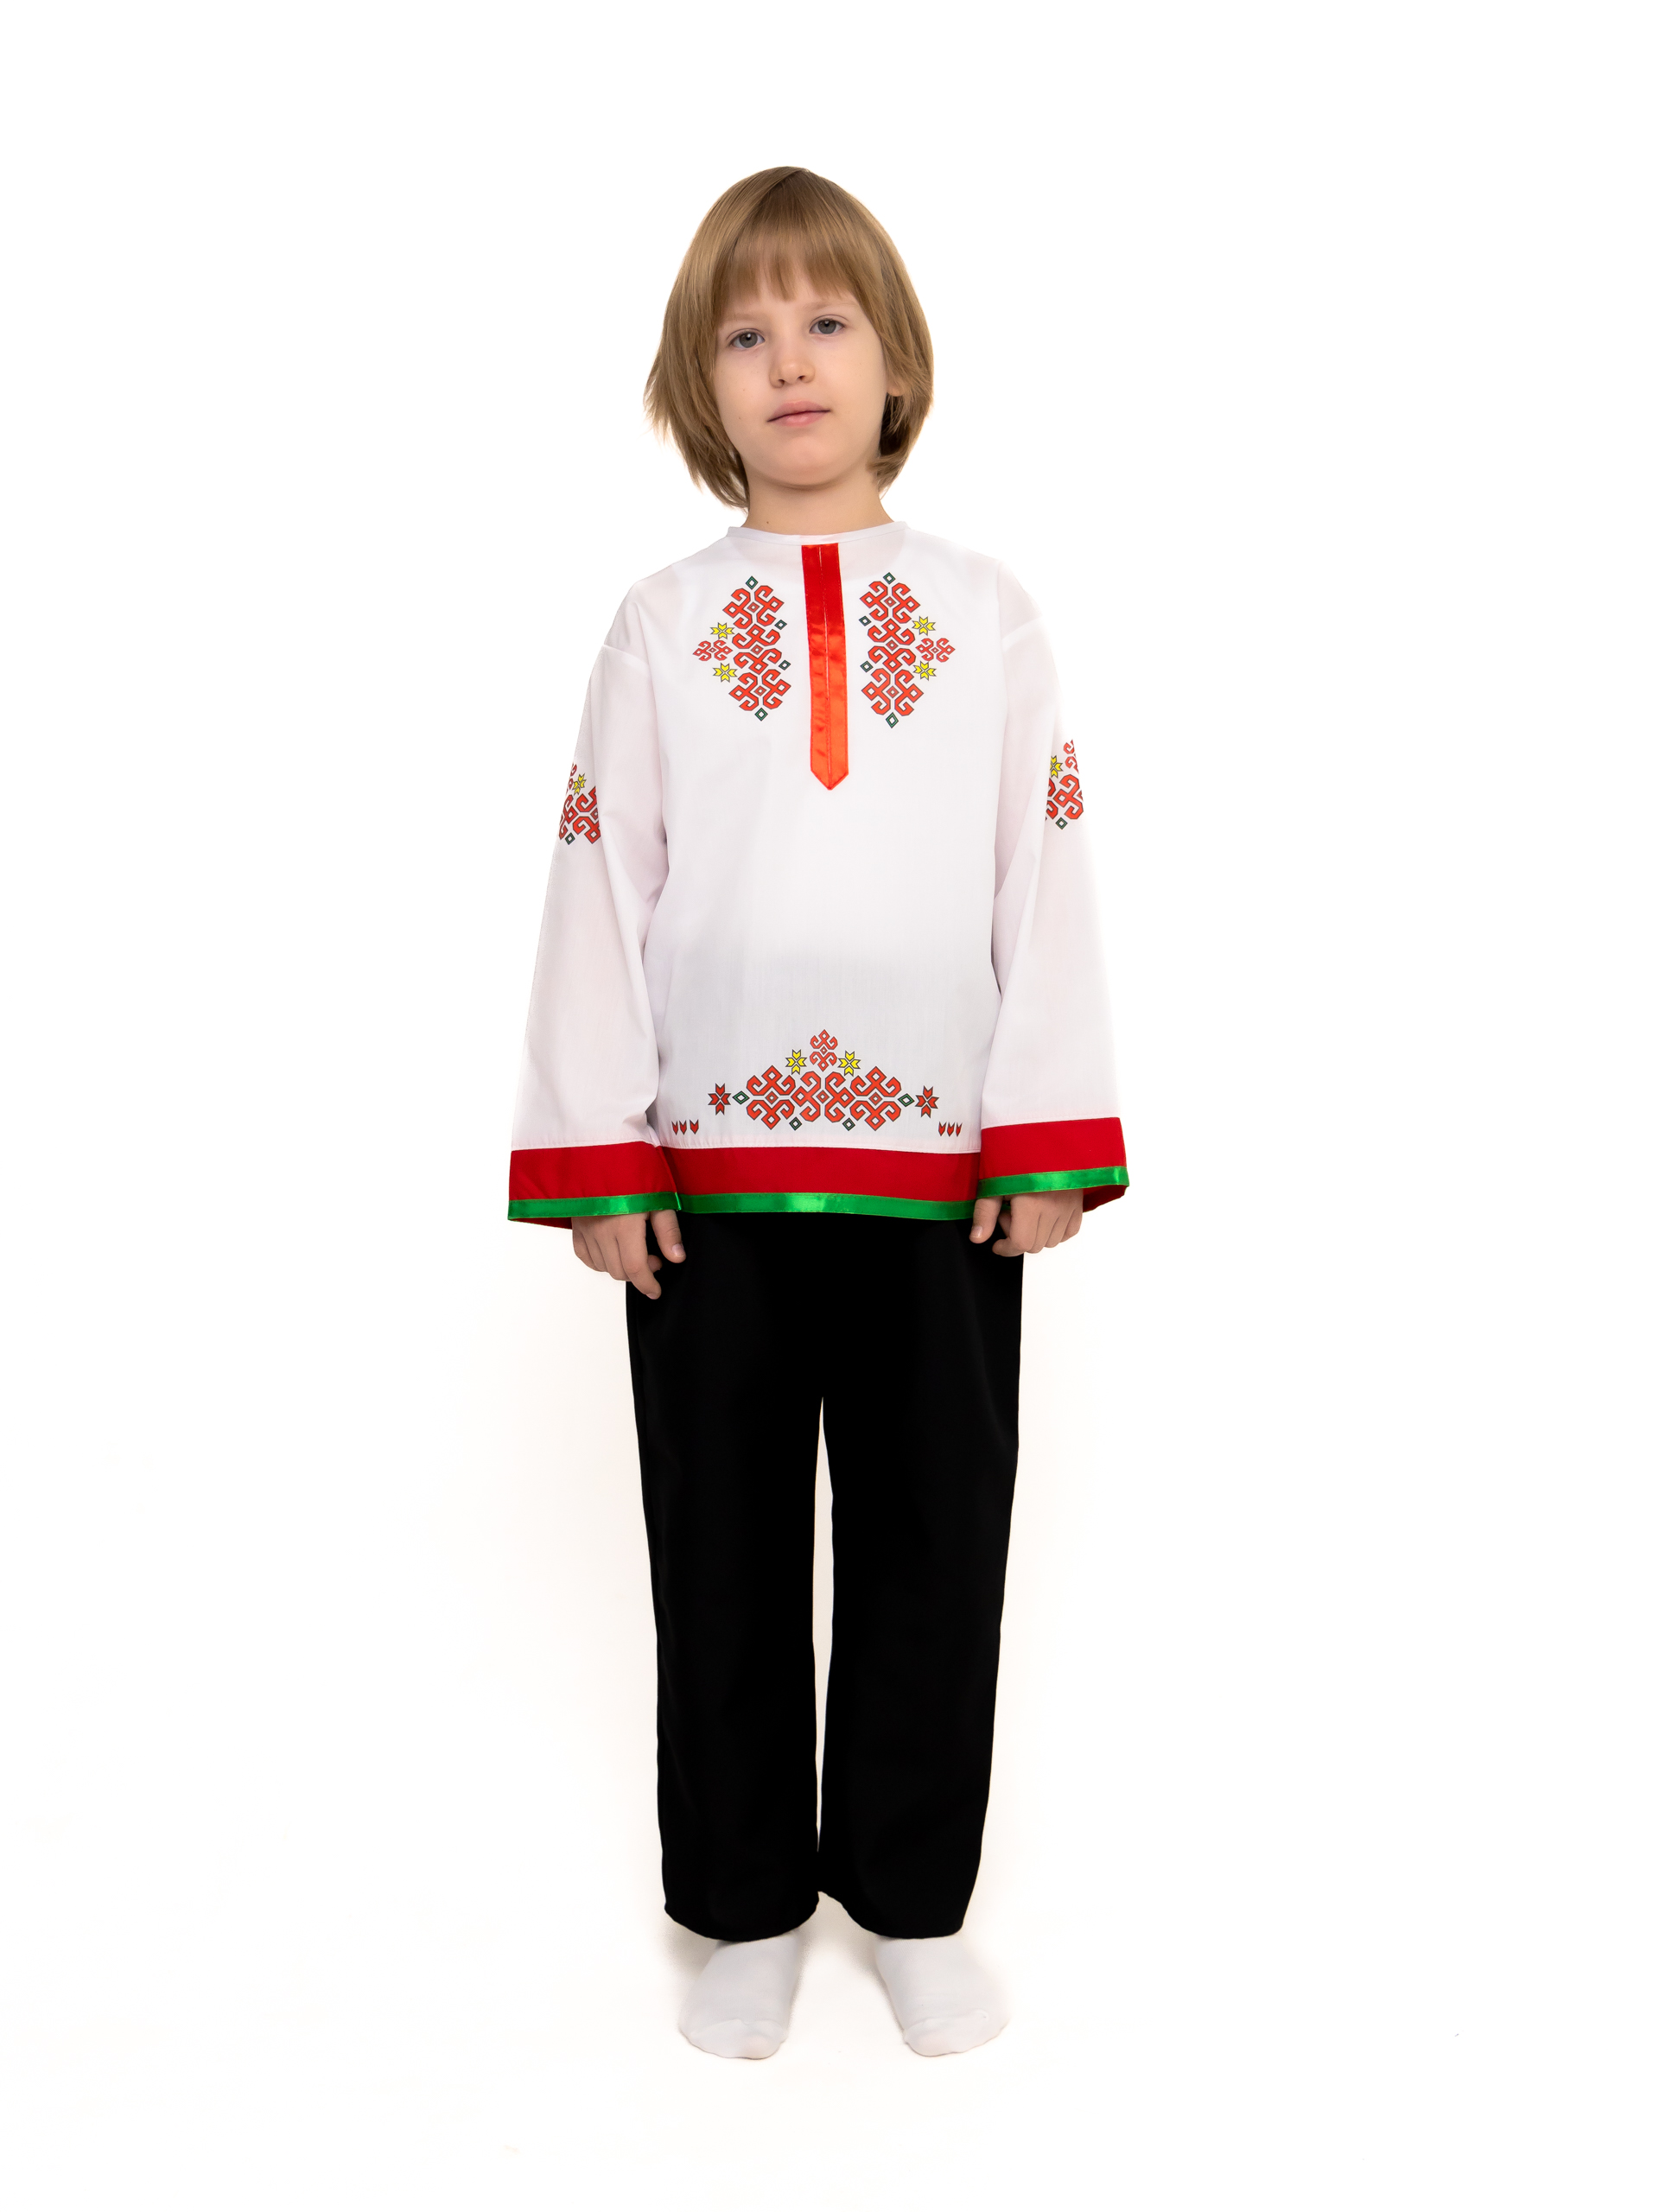 Русские-народные костюмы для мальчиков